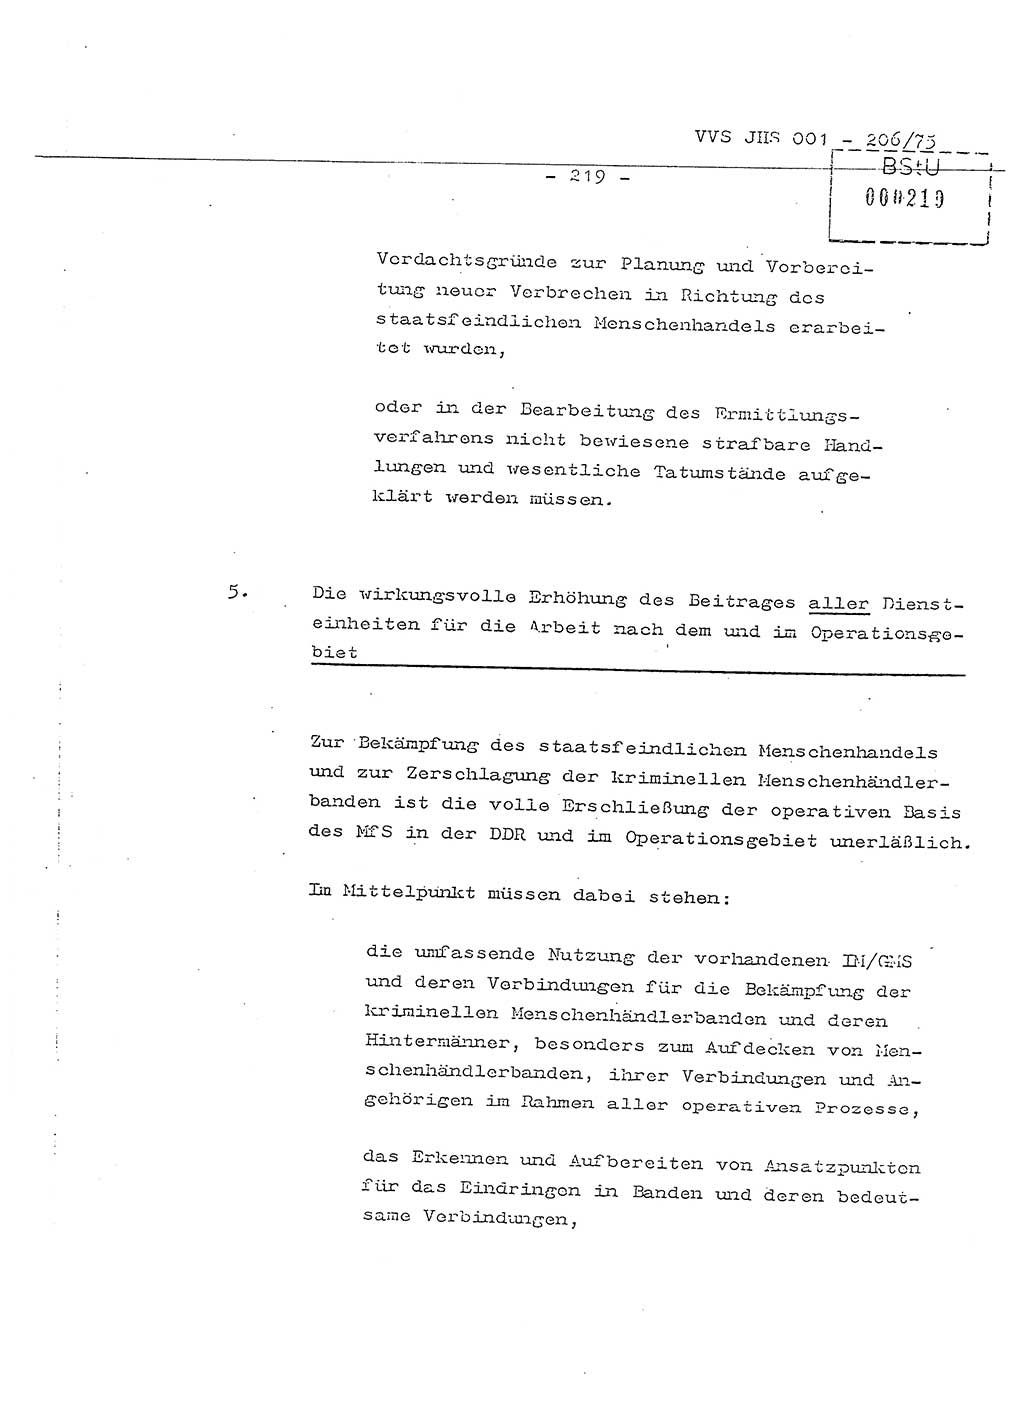 Dissertation Generalmajor Manfred Hummitzsch (Leiter der BV Leipzig), Generalmajor Heinz Fiedler (HA Ⅵ), Oberst Rolf Fister (HA Ⅸ), Ministerium für Staatssicherheit (MfS) [Deutsche Demokratische Republik (DDR)], Juristische Hochschule (JHS), Vertrauliche Verschlußsache (VVS) 001-206/75, Potsdam 1975, Seite 219 (Diss. MfS DDR JHS VVS 001-206/75 1975, S. 219)